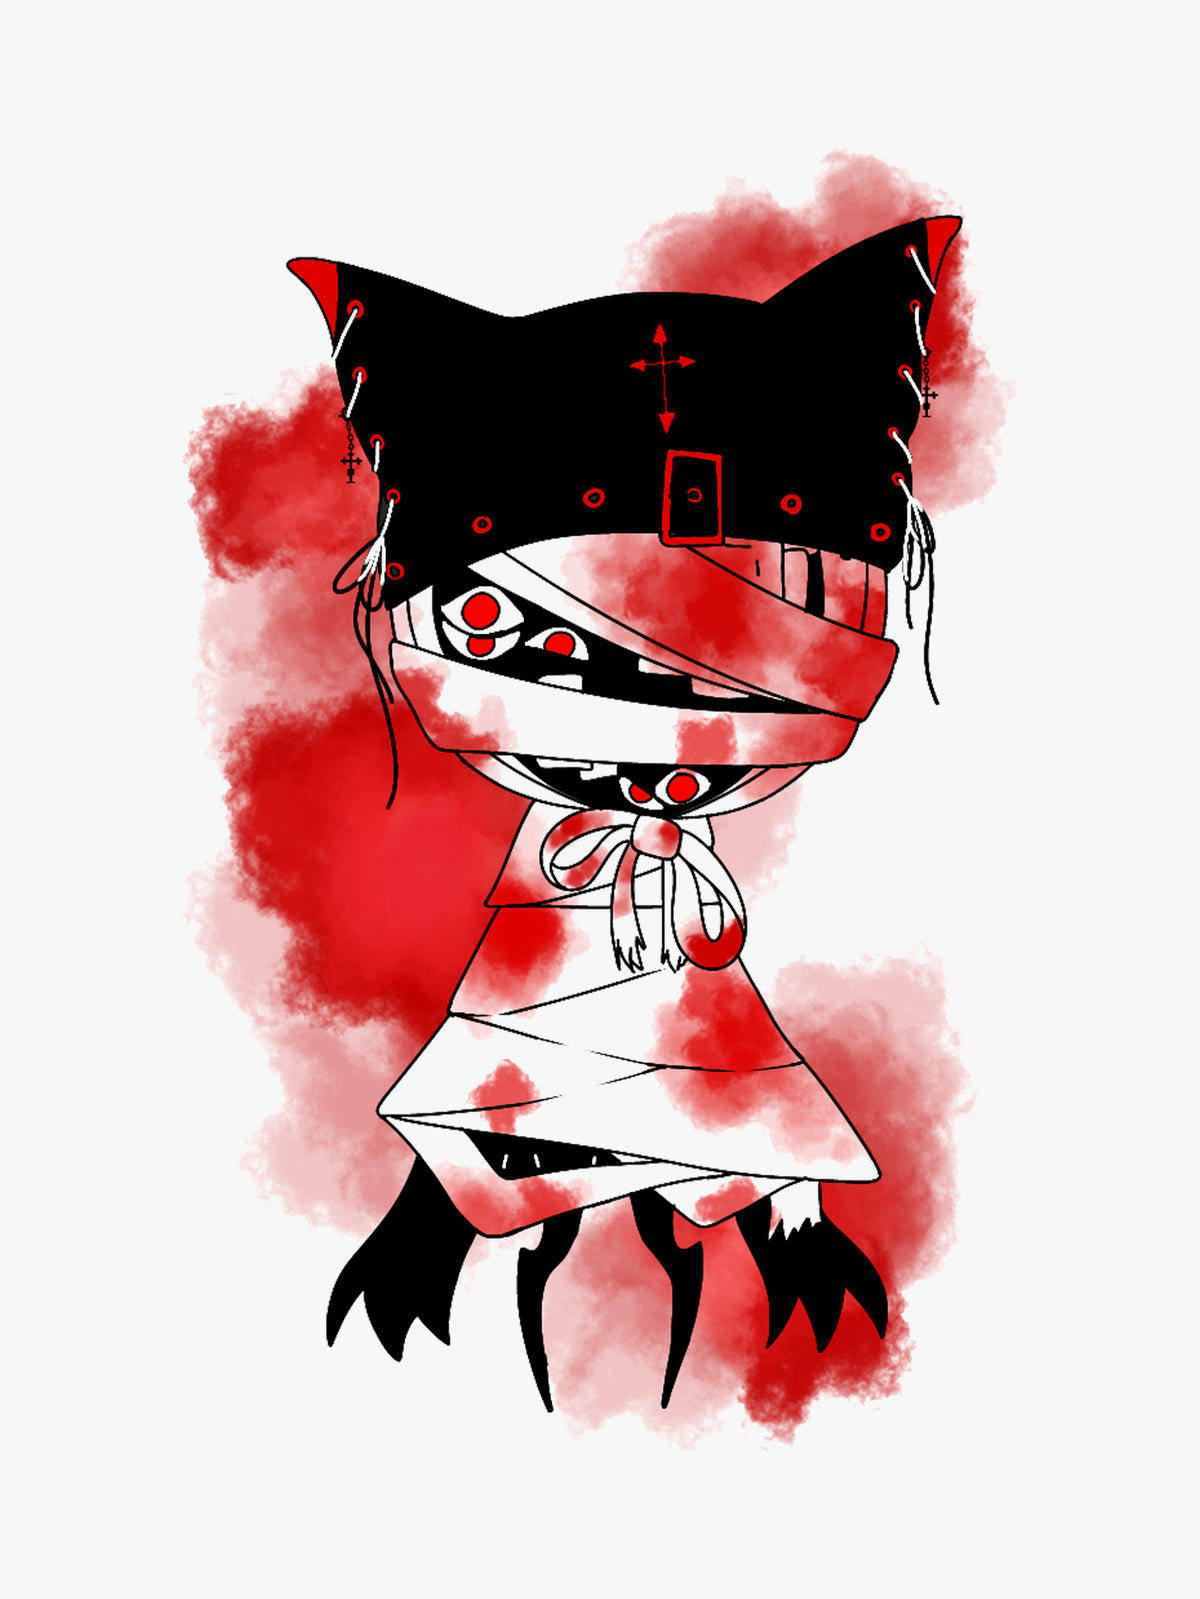 Blood Sprite by Batified_Possum